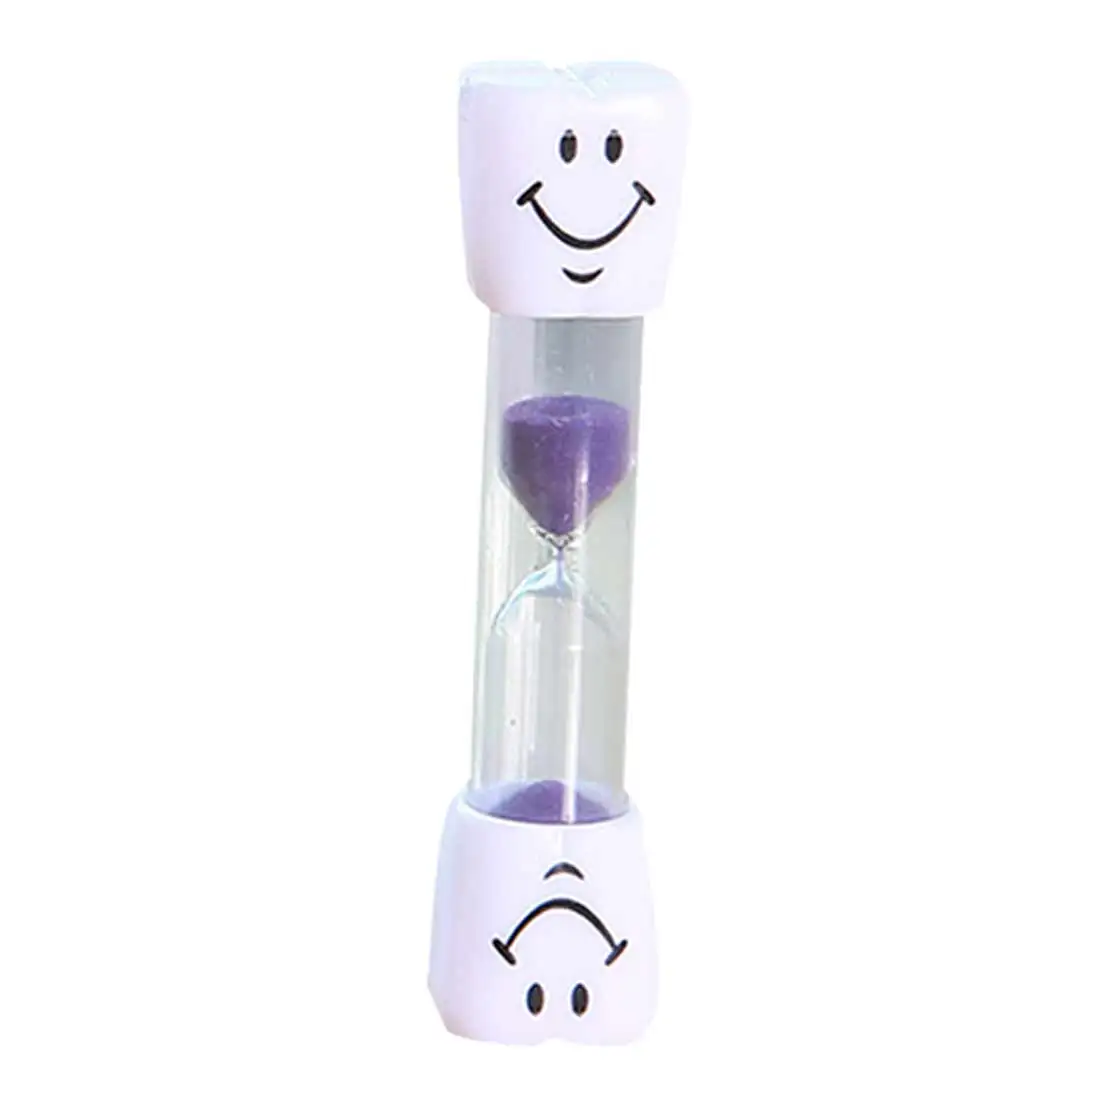 3 минуты улыбающееся лицо Песочные часы Таймер для детей зубная Чистка таймер подарок - Цвет: purple